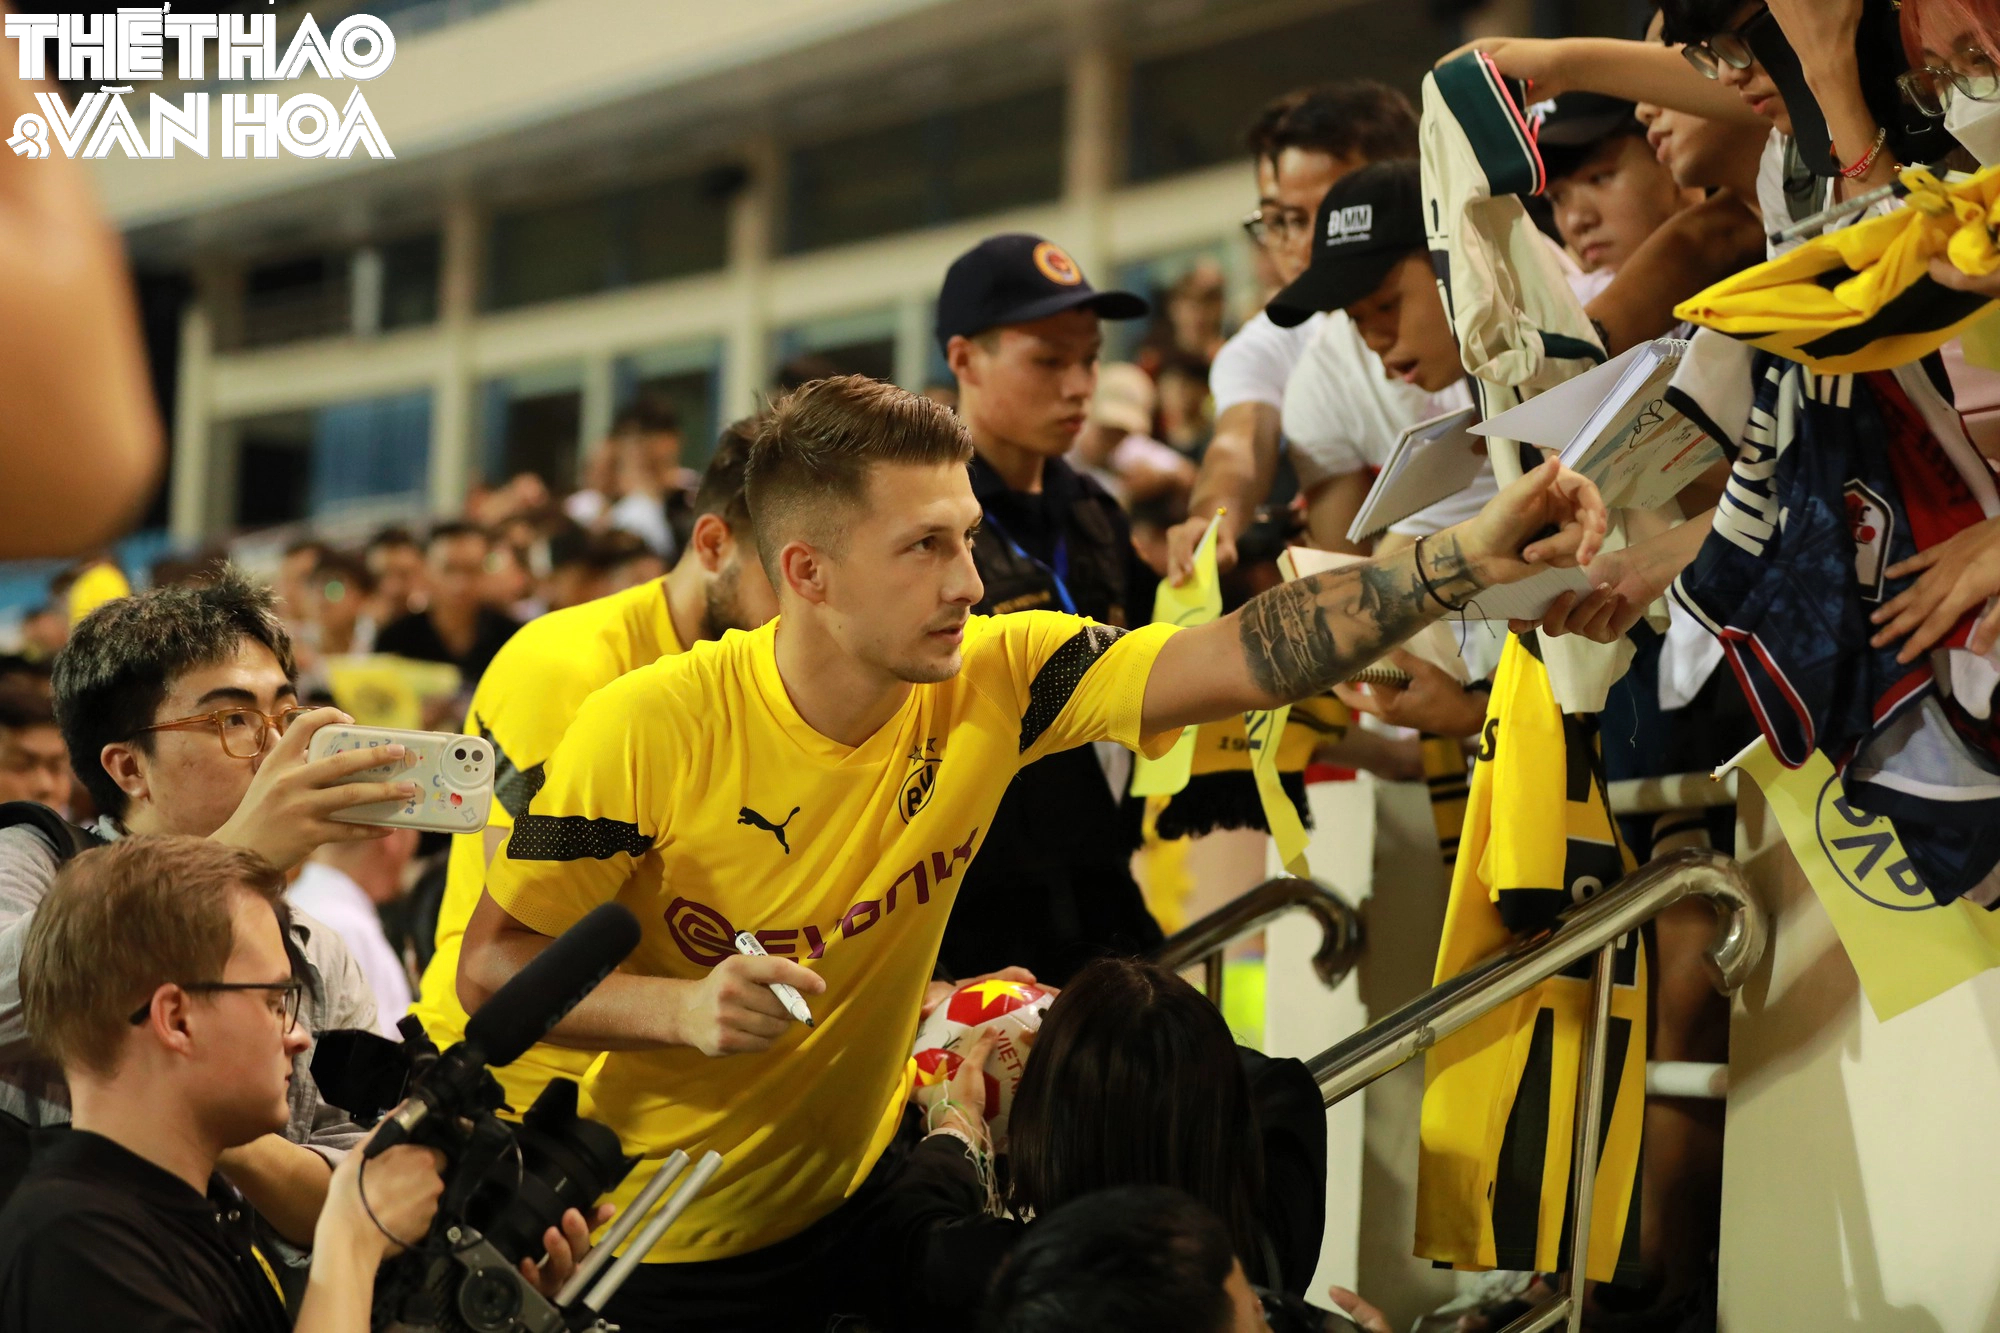 Cầu thủ Dortmund cực điển trai trong buổi giao lưu kí tặng CĐV  - Ảnh 18.